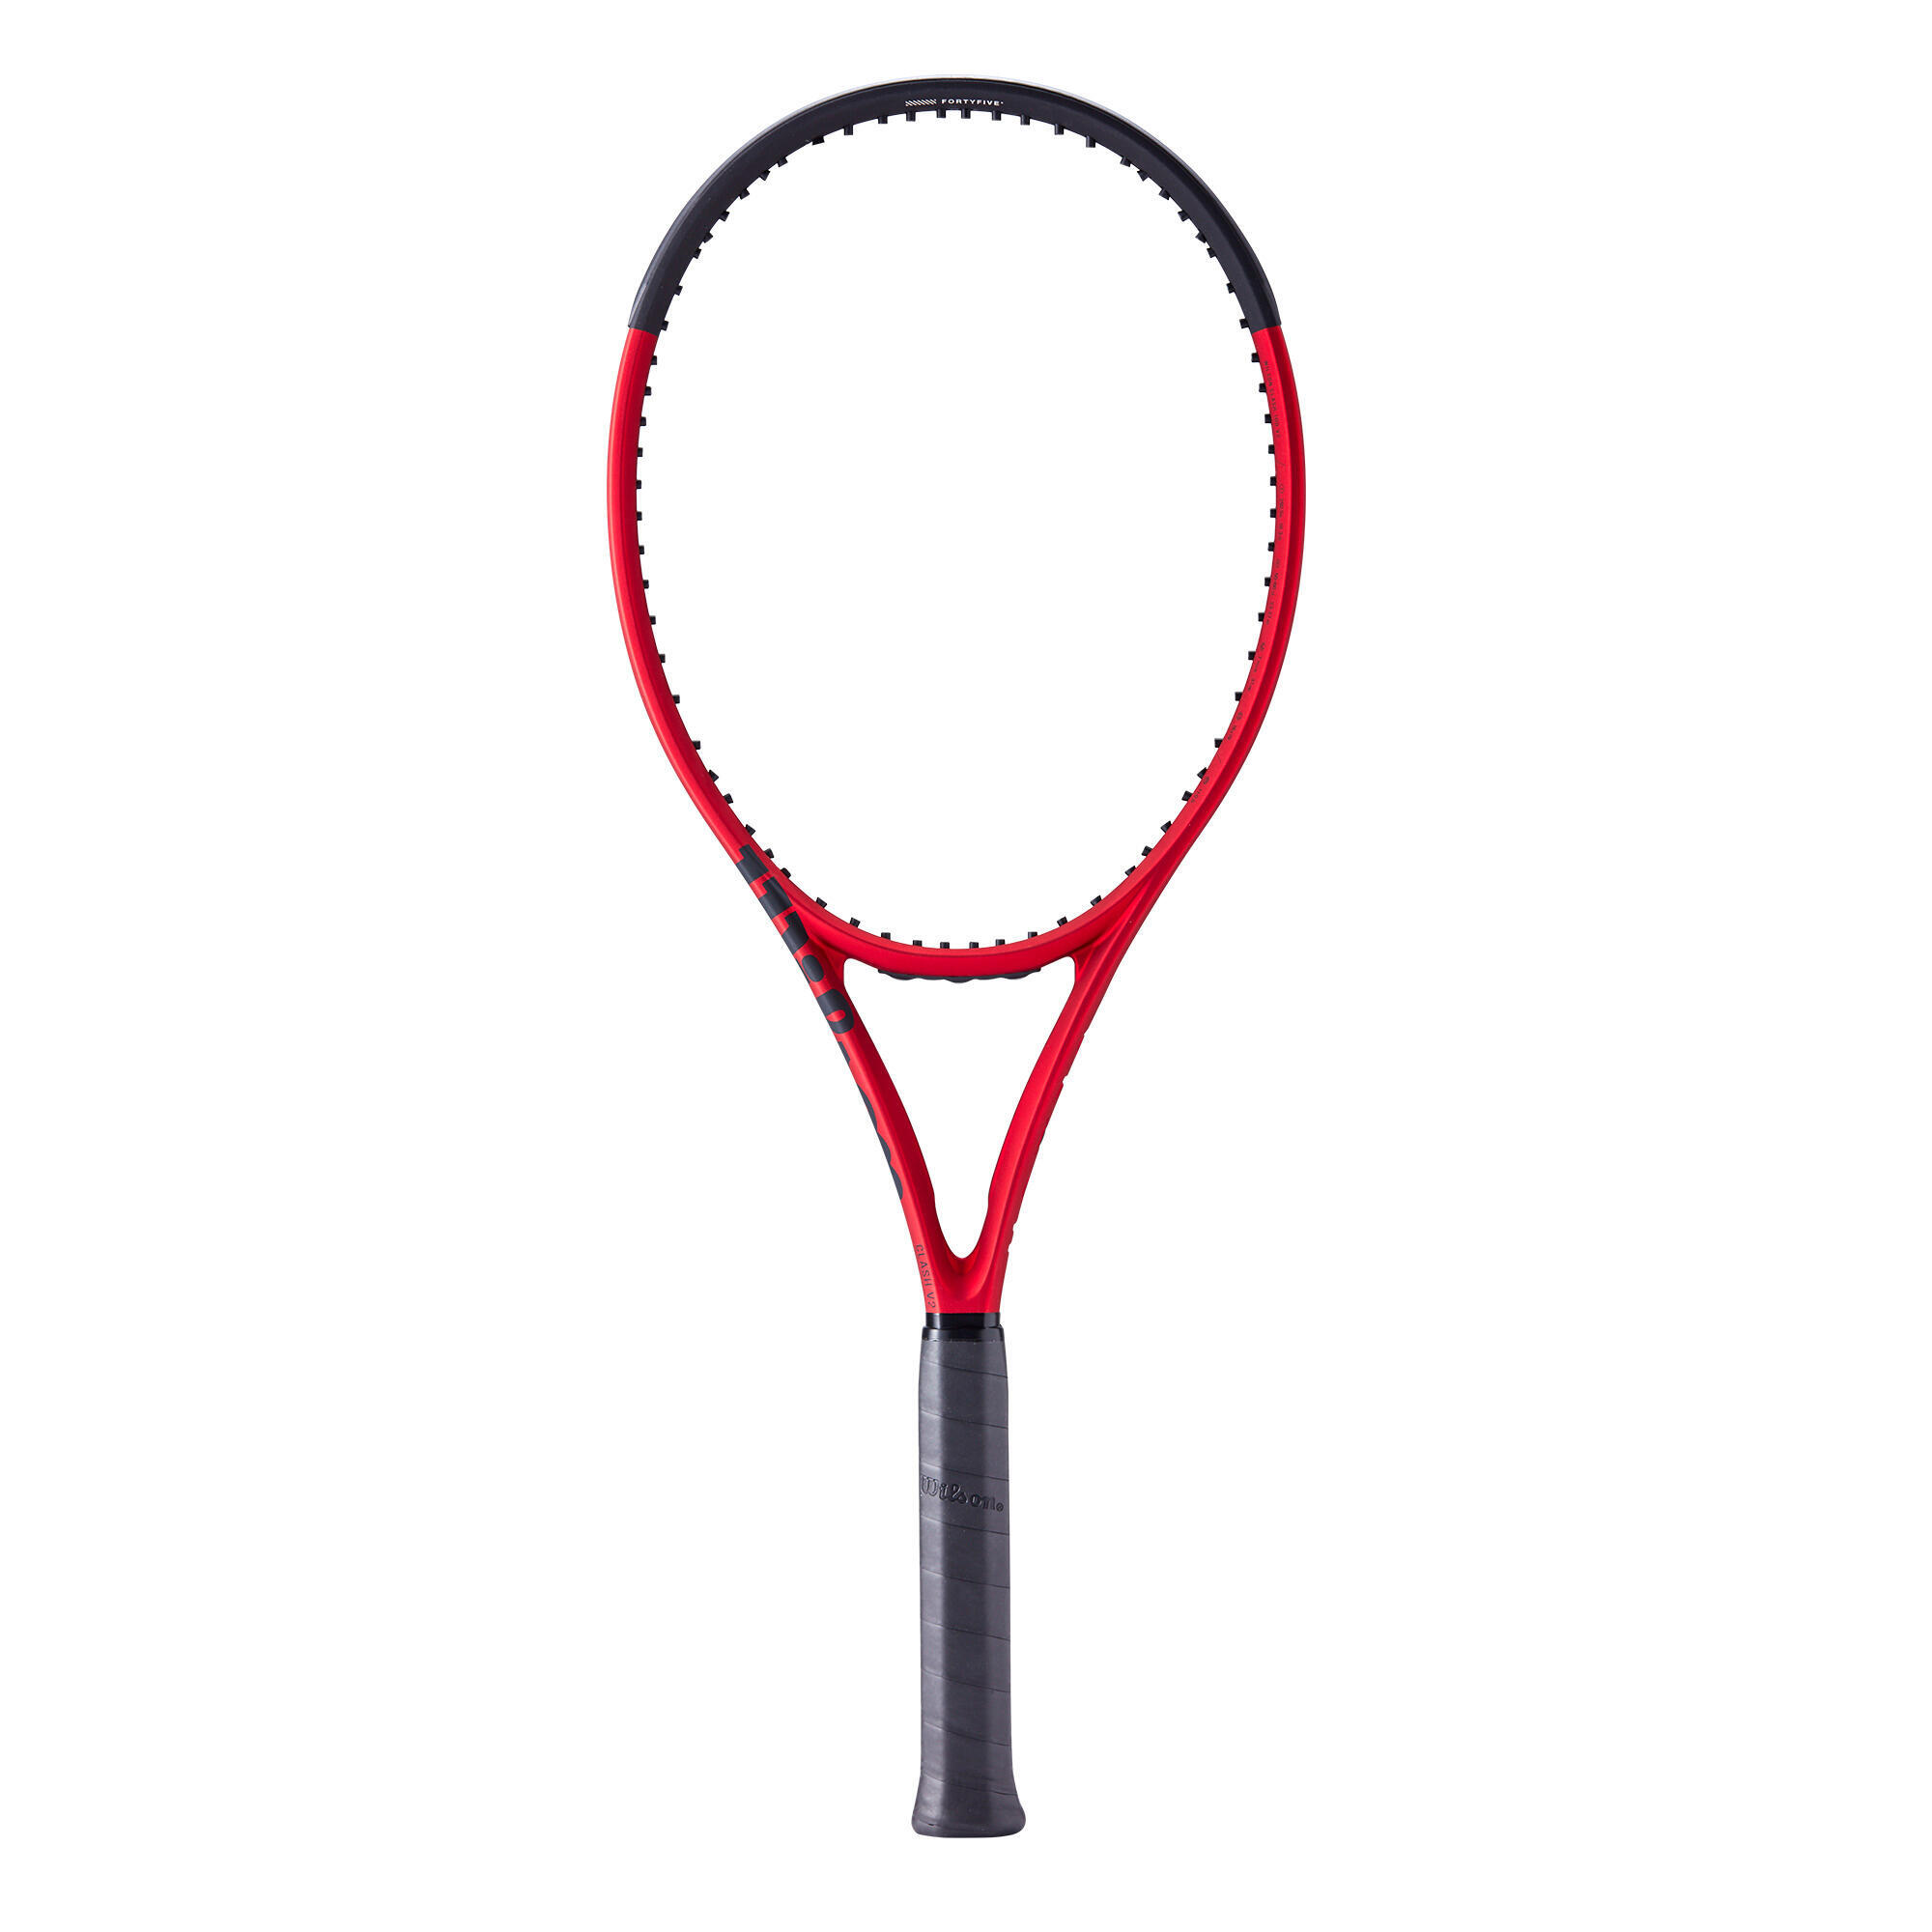 Теннисная ракетка Wilson - Clash 100 V2 черная/красная 295 г, красный черный сумка wilson super tour clash 6r v2 0 красный